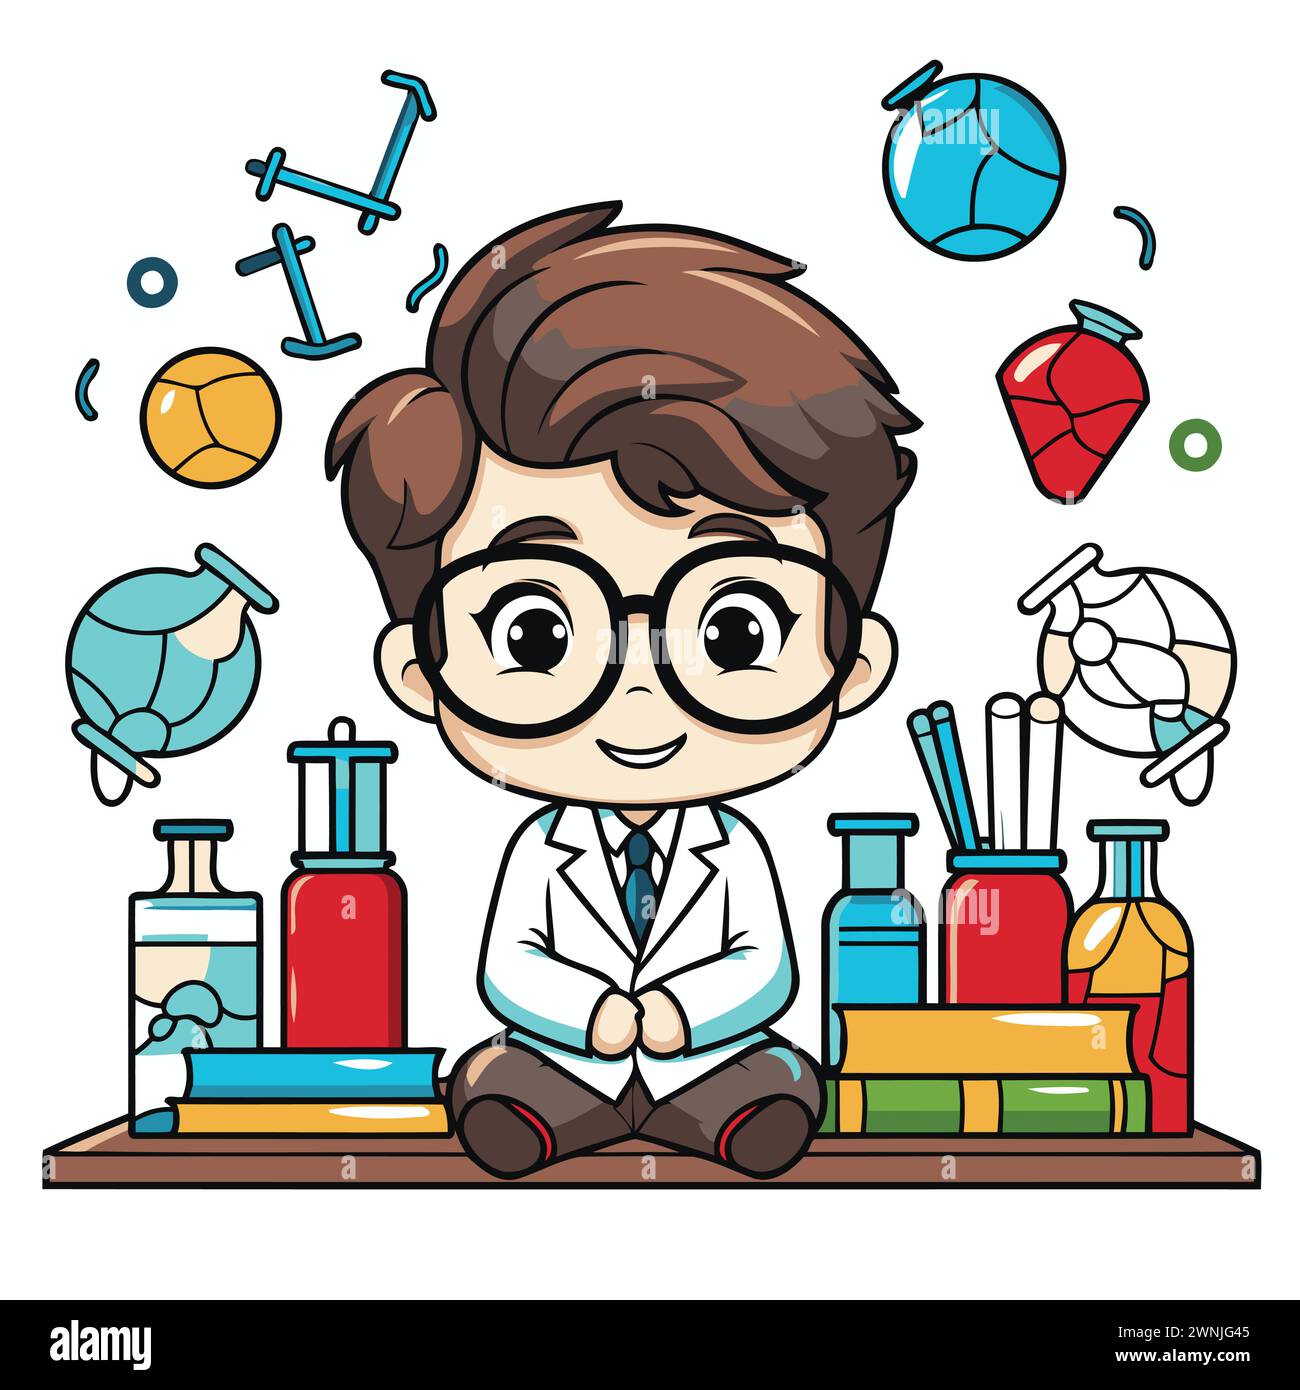 Lindo niño vestido como un científico sentado en un estante lleno de suministros de ciencia Ilustración del Vector